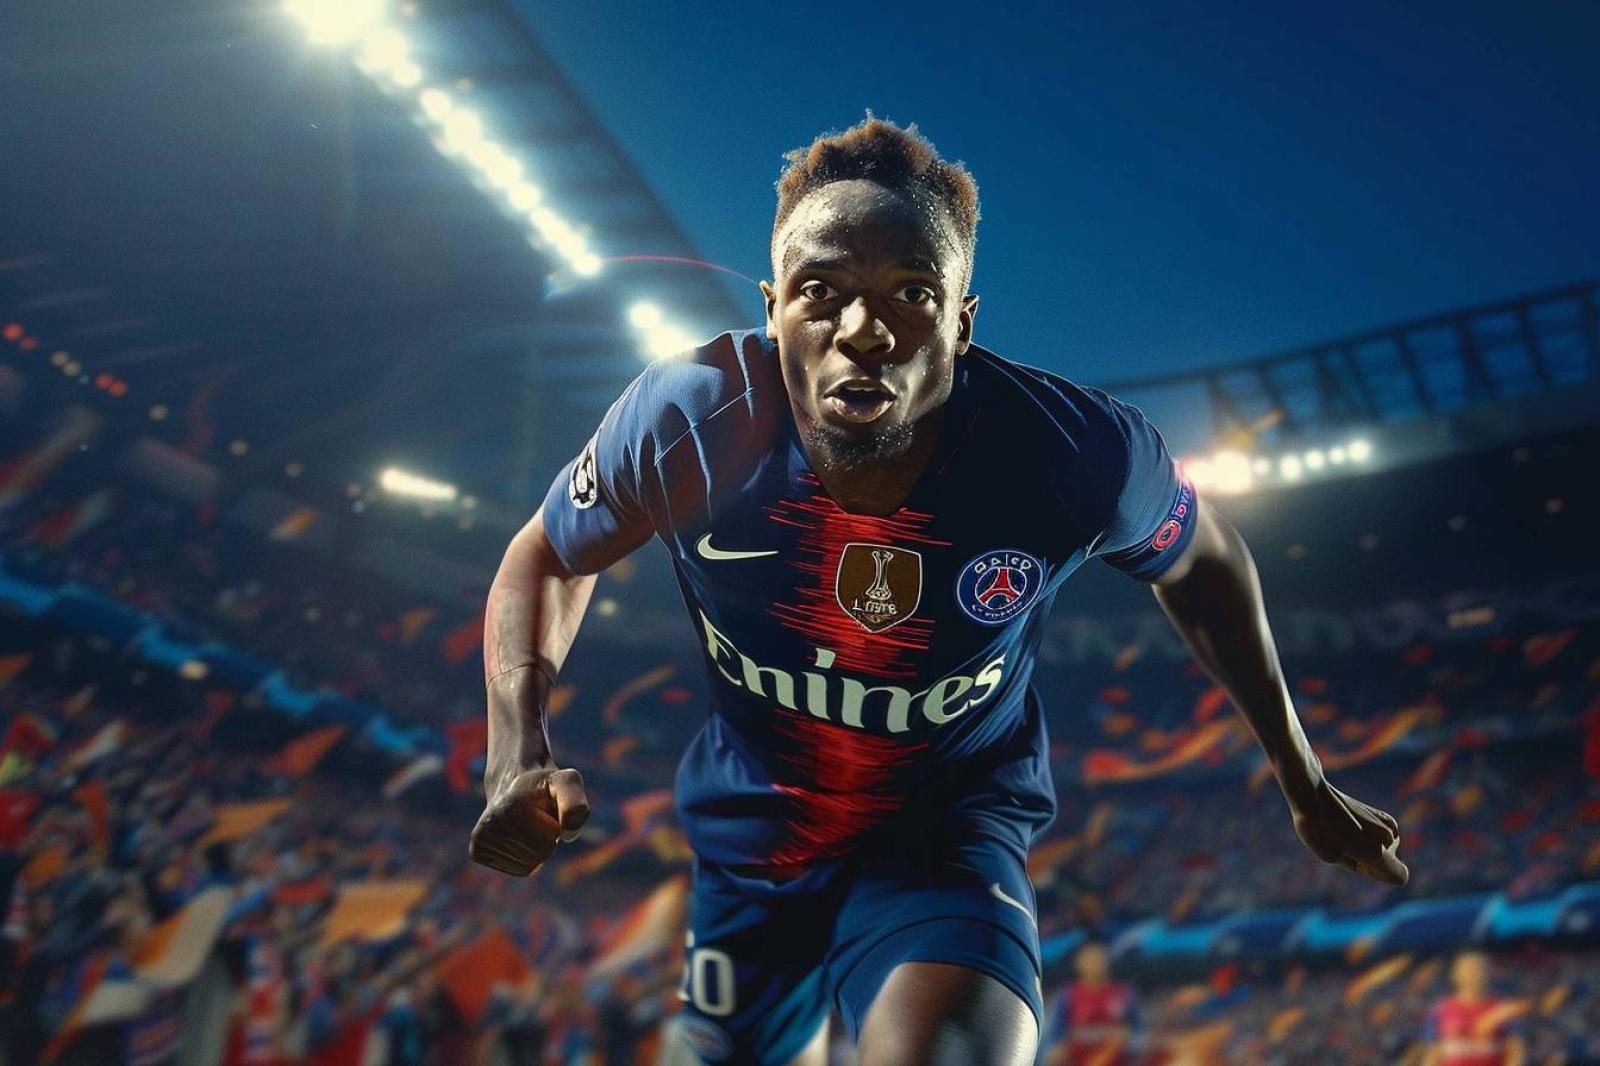 Ce transfert choquant de Maïdine Douane en Ligue 2 va-t-il bouleverser le monde du football ?